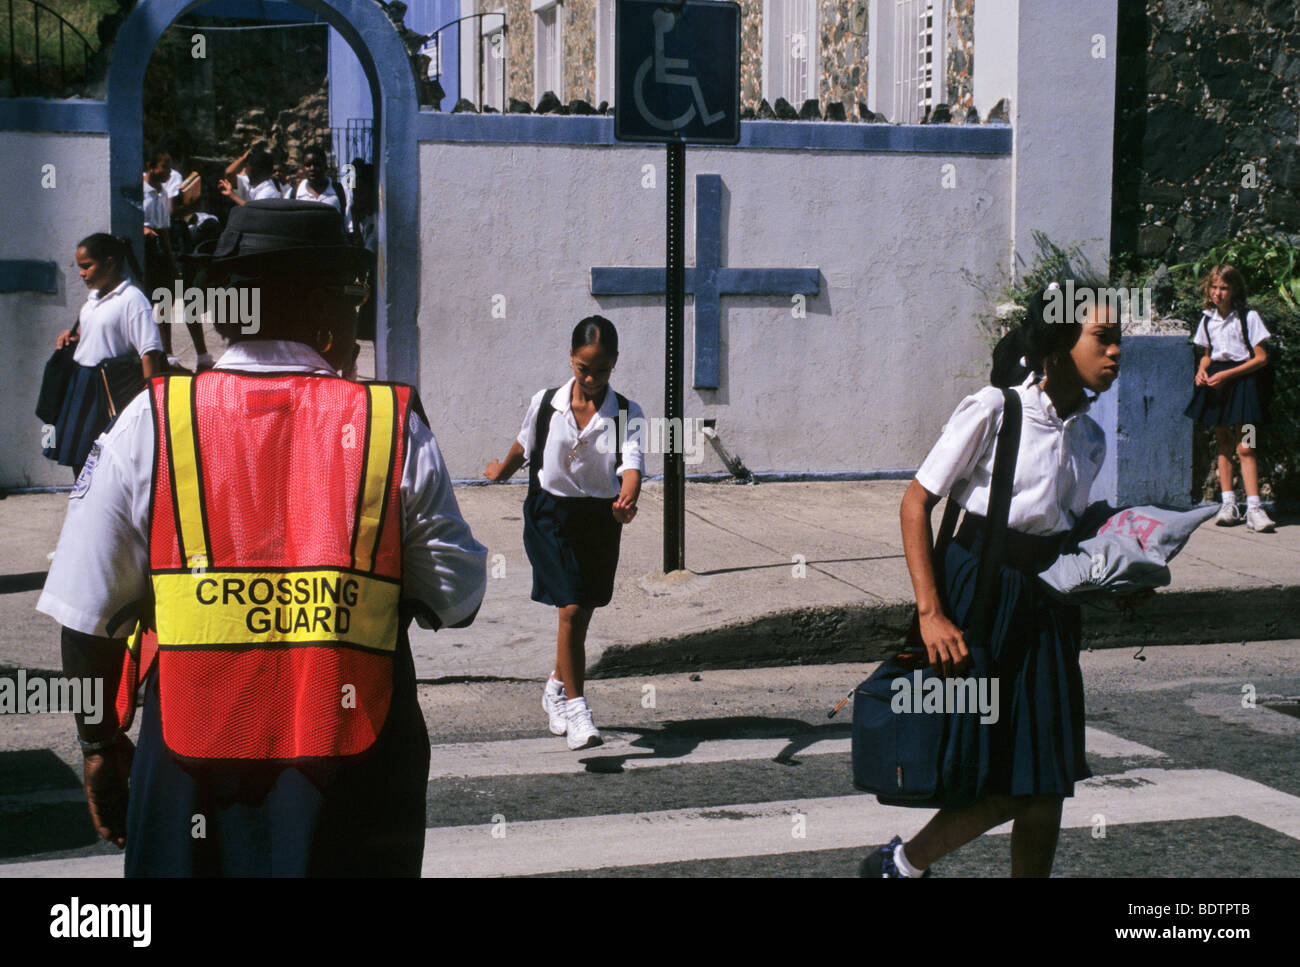 Le ragazze della scuola e protezione di attraversamento al di fuori di una scuola cristiana - Charlotte Amalie - St Thomas - Isole vergini Foto Stock